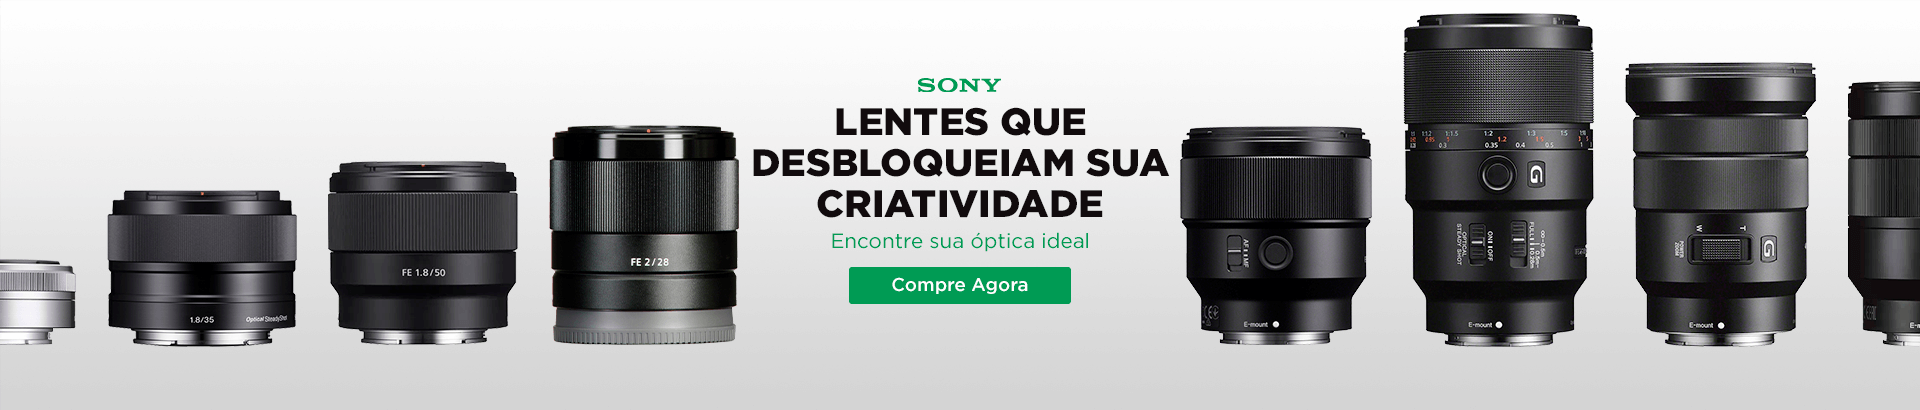 Sony Lentes